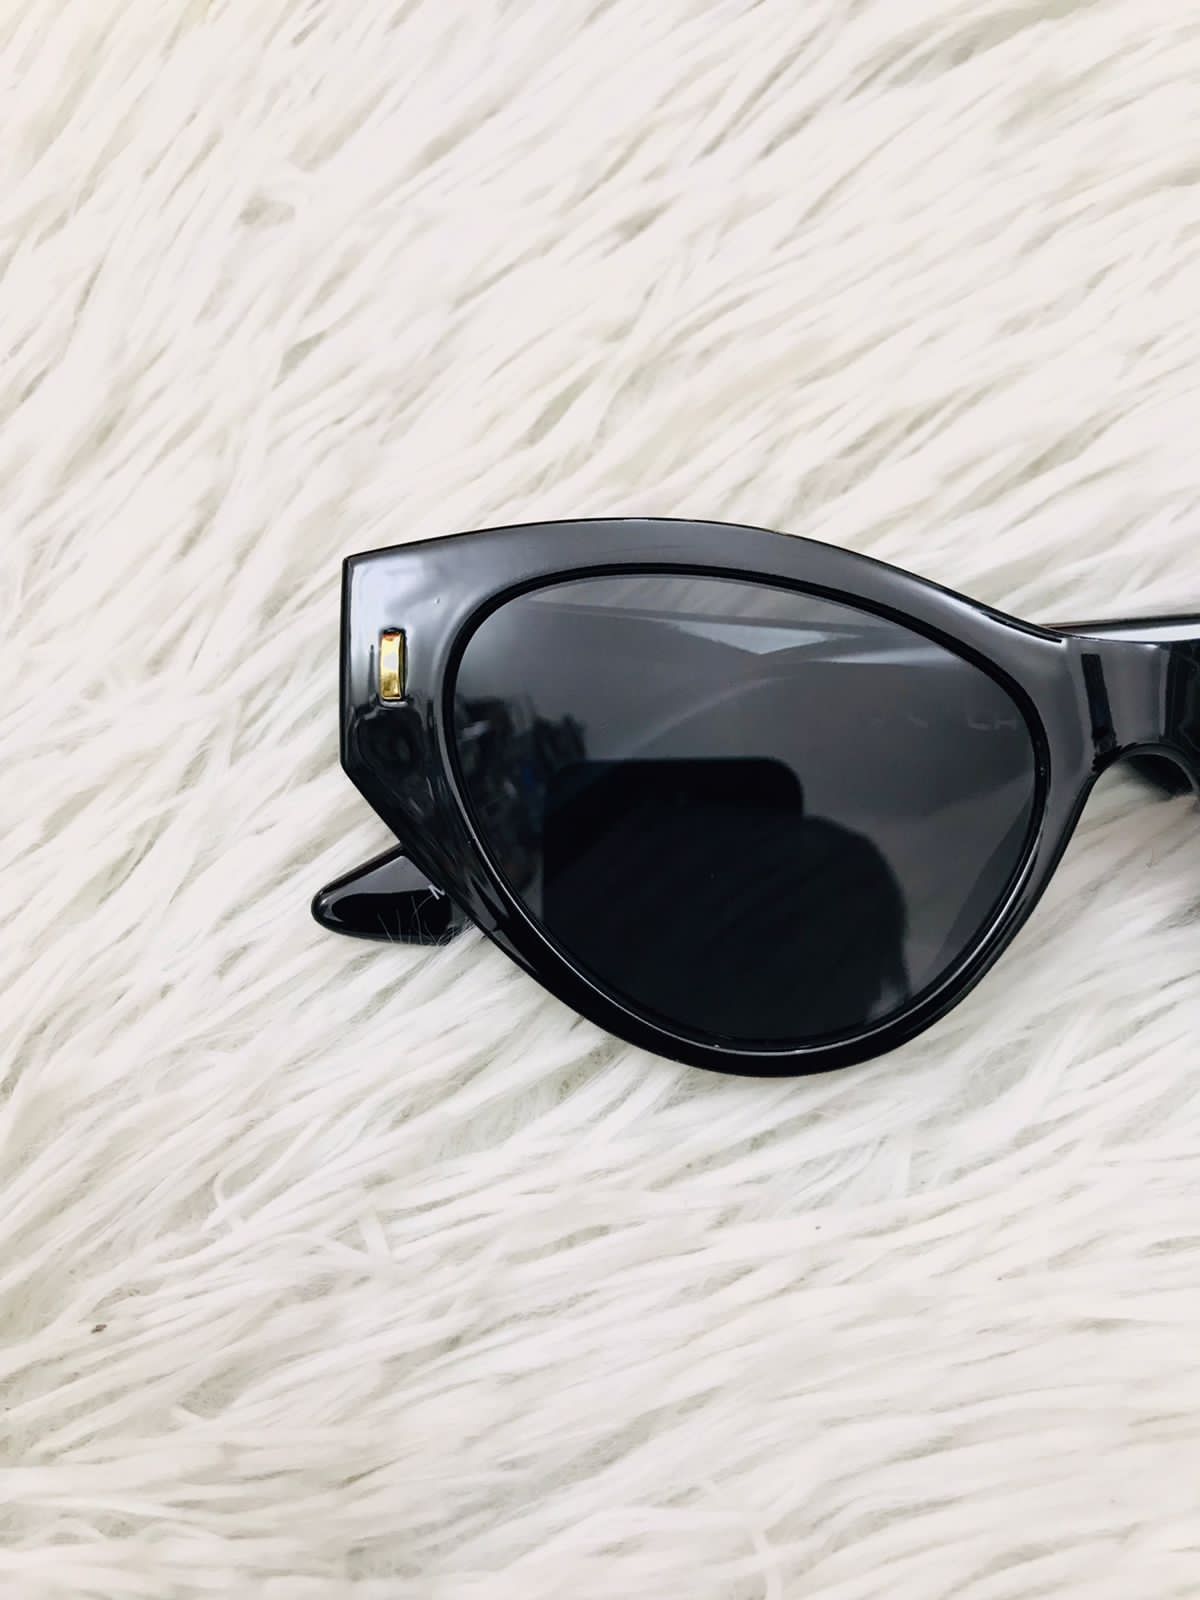 Lentes Fashion Nova original negro estilo ojo de gato y pequeño detalle en dorado al lado, PROTECCIÓN UV 100